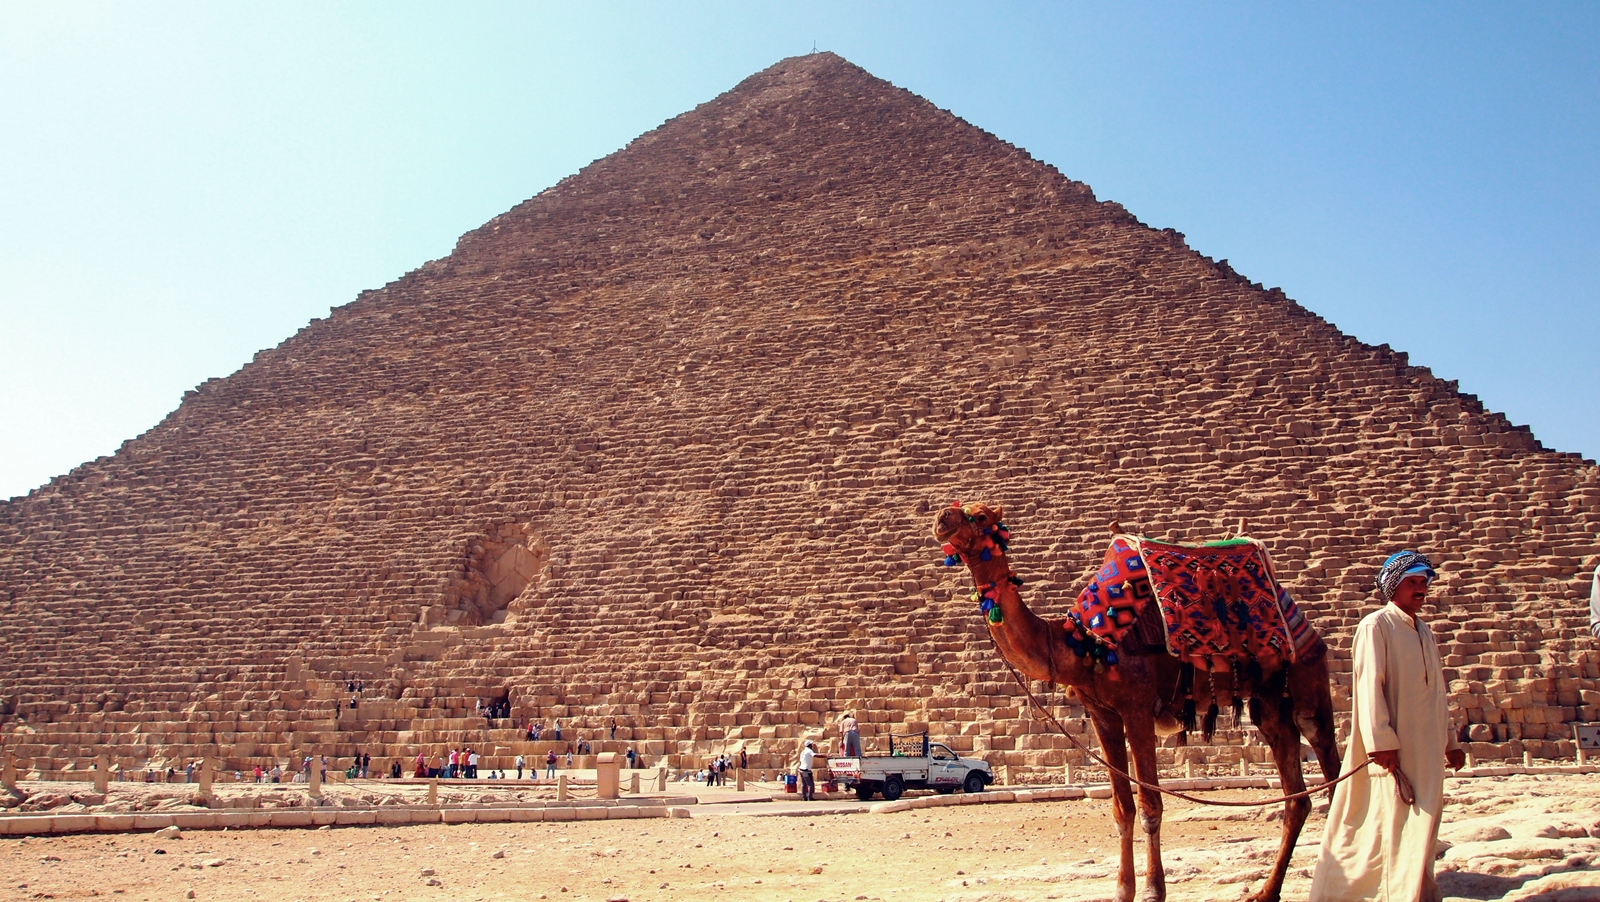 먼 거리에서도 카메라로 담기가 힘들 정도로 거대한 피라미드의 모습